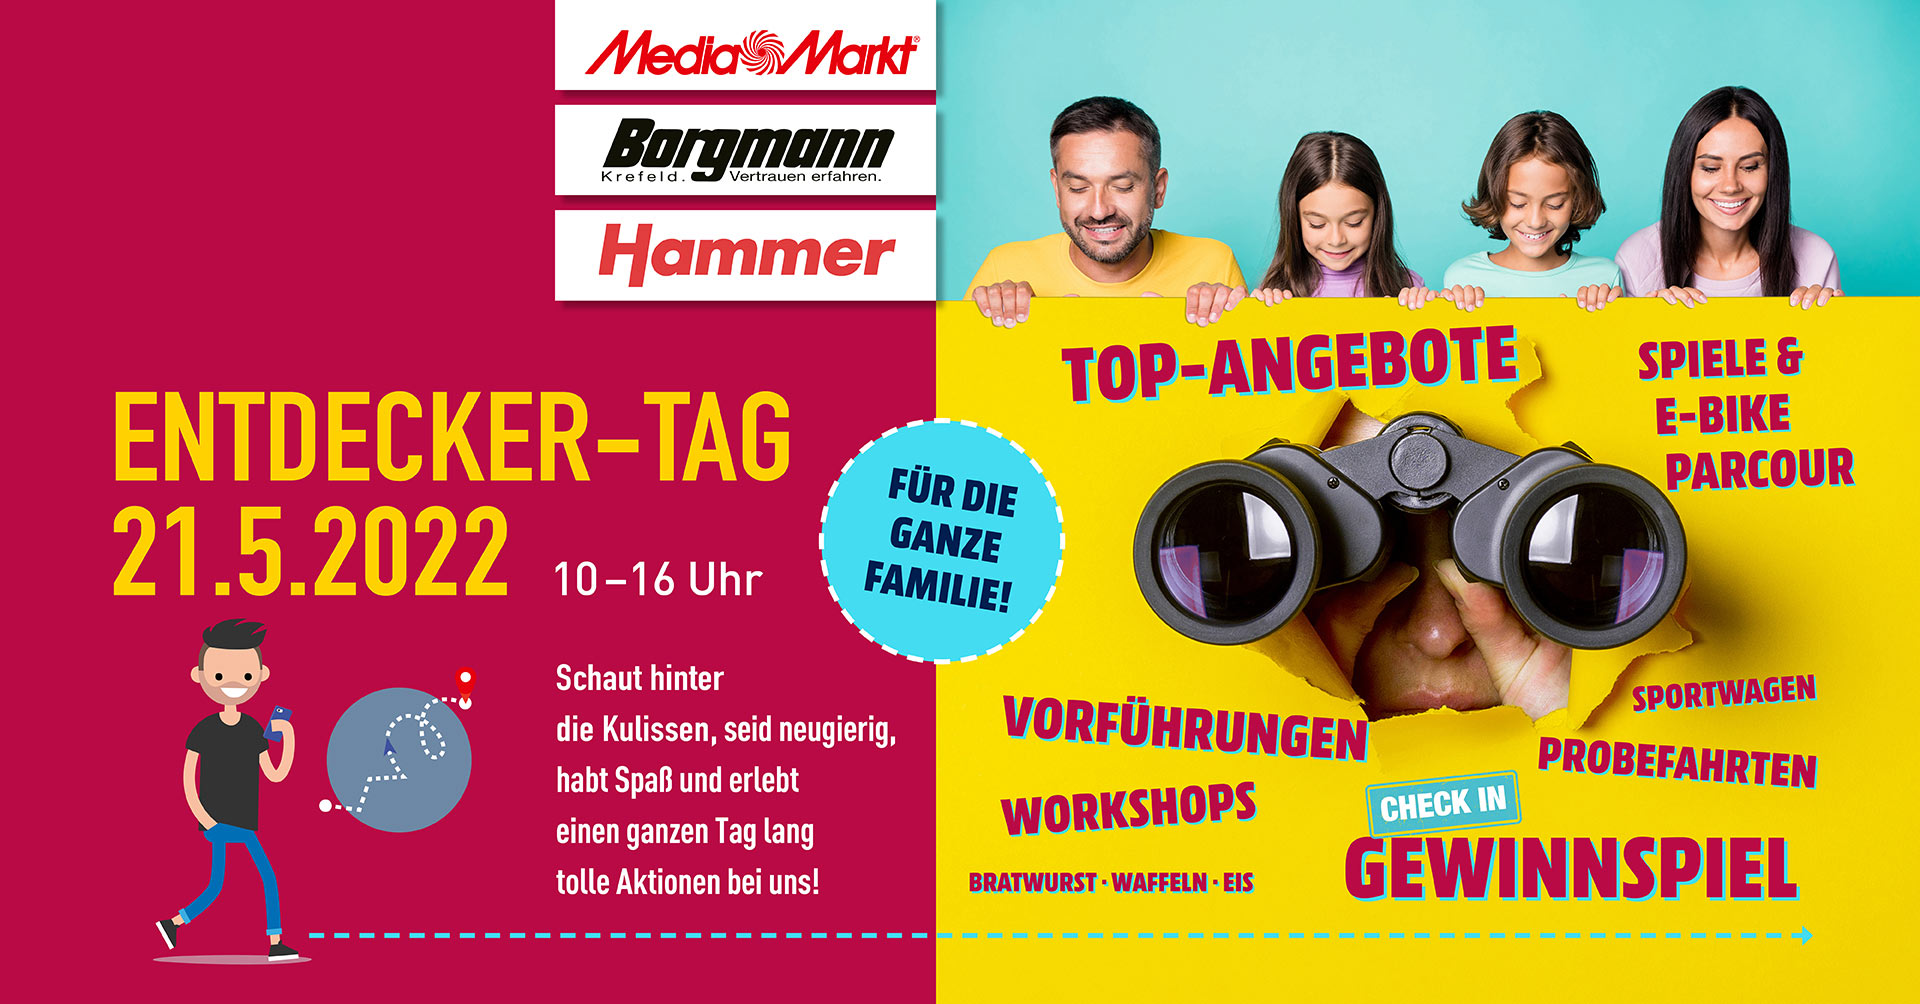 ntdecker-Tag am 21.05.2022 bei MediaMarkt, Autohaus Borgmann und Hammer